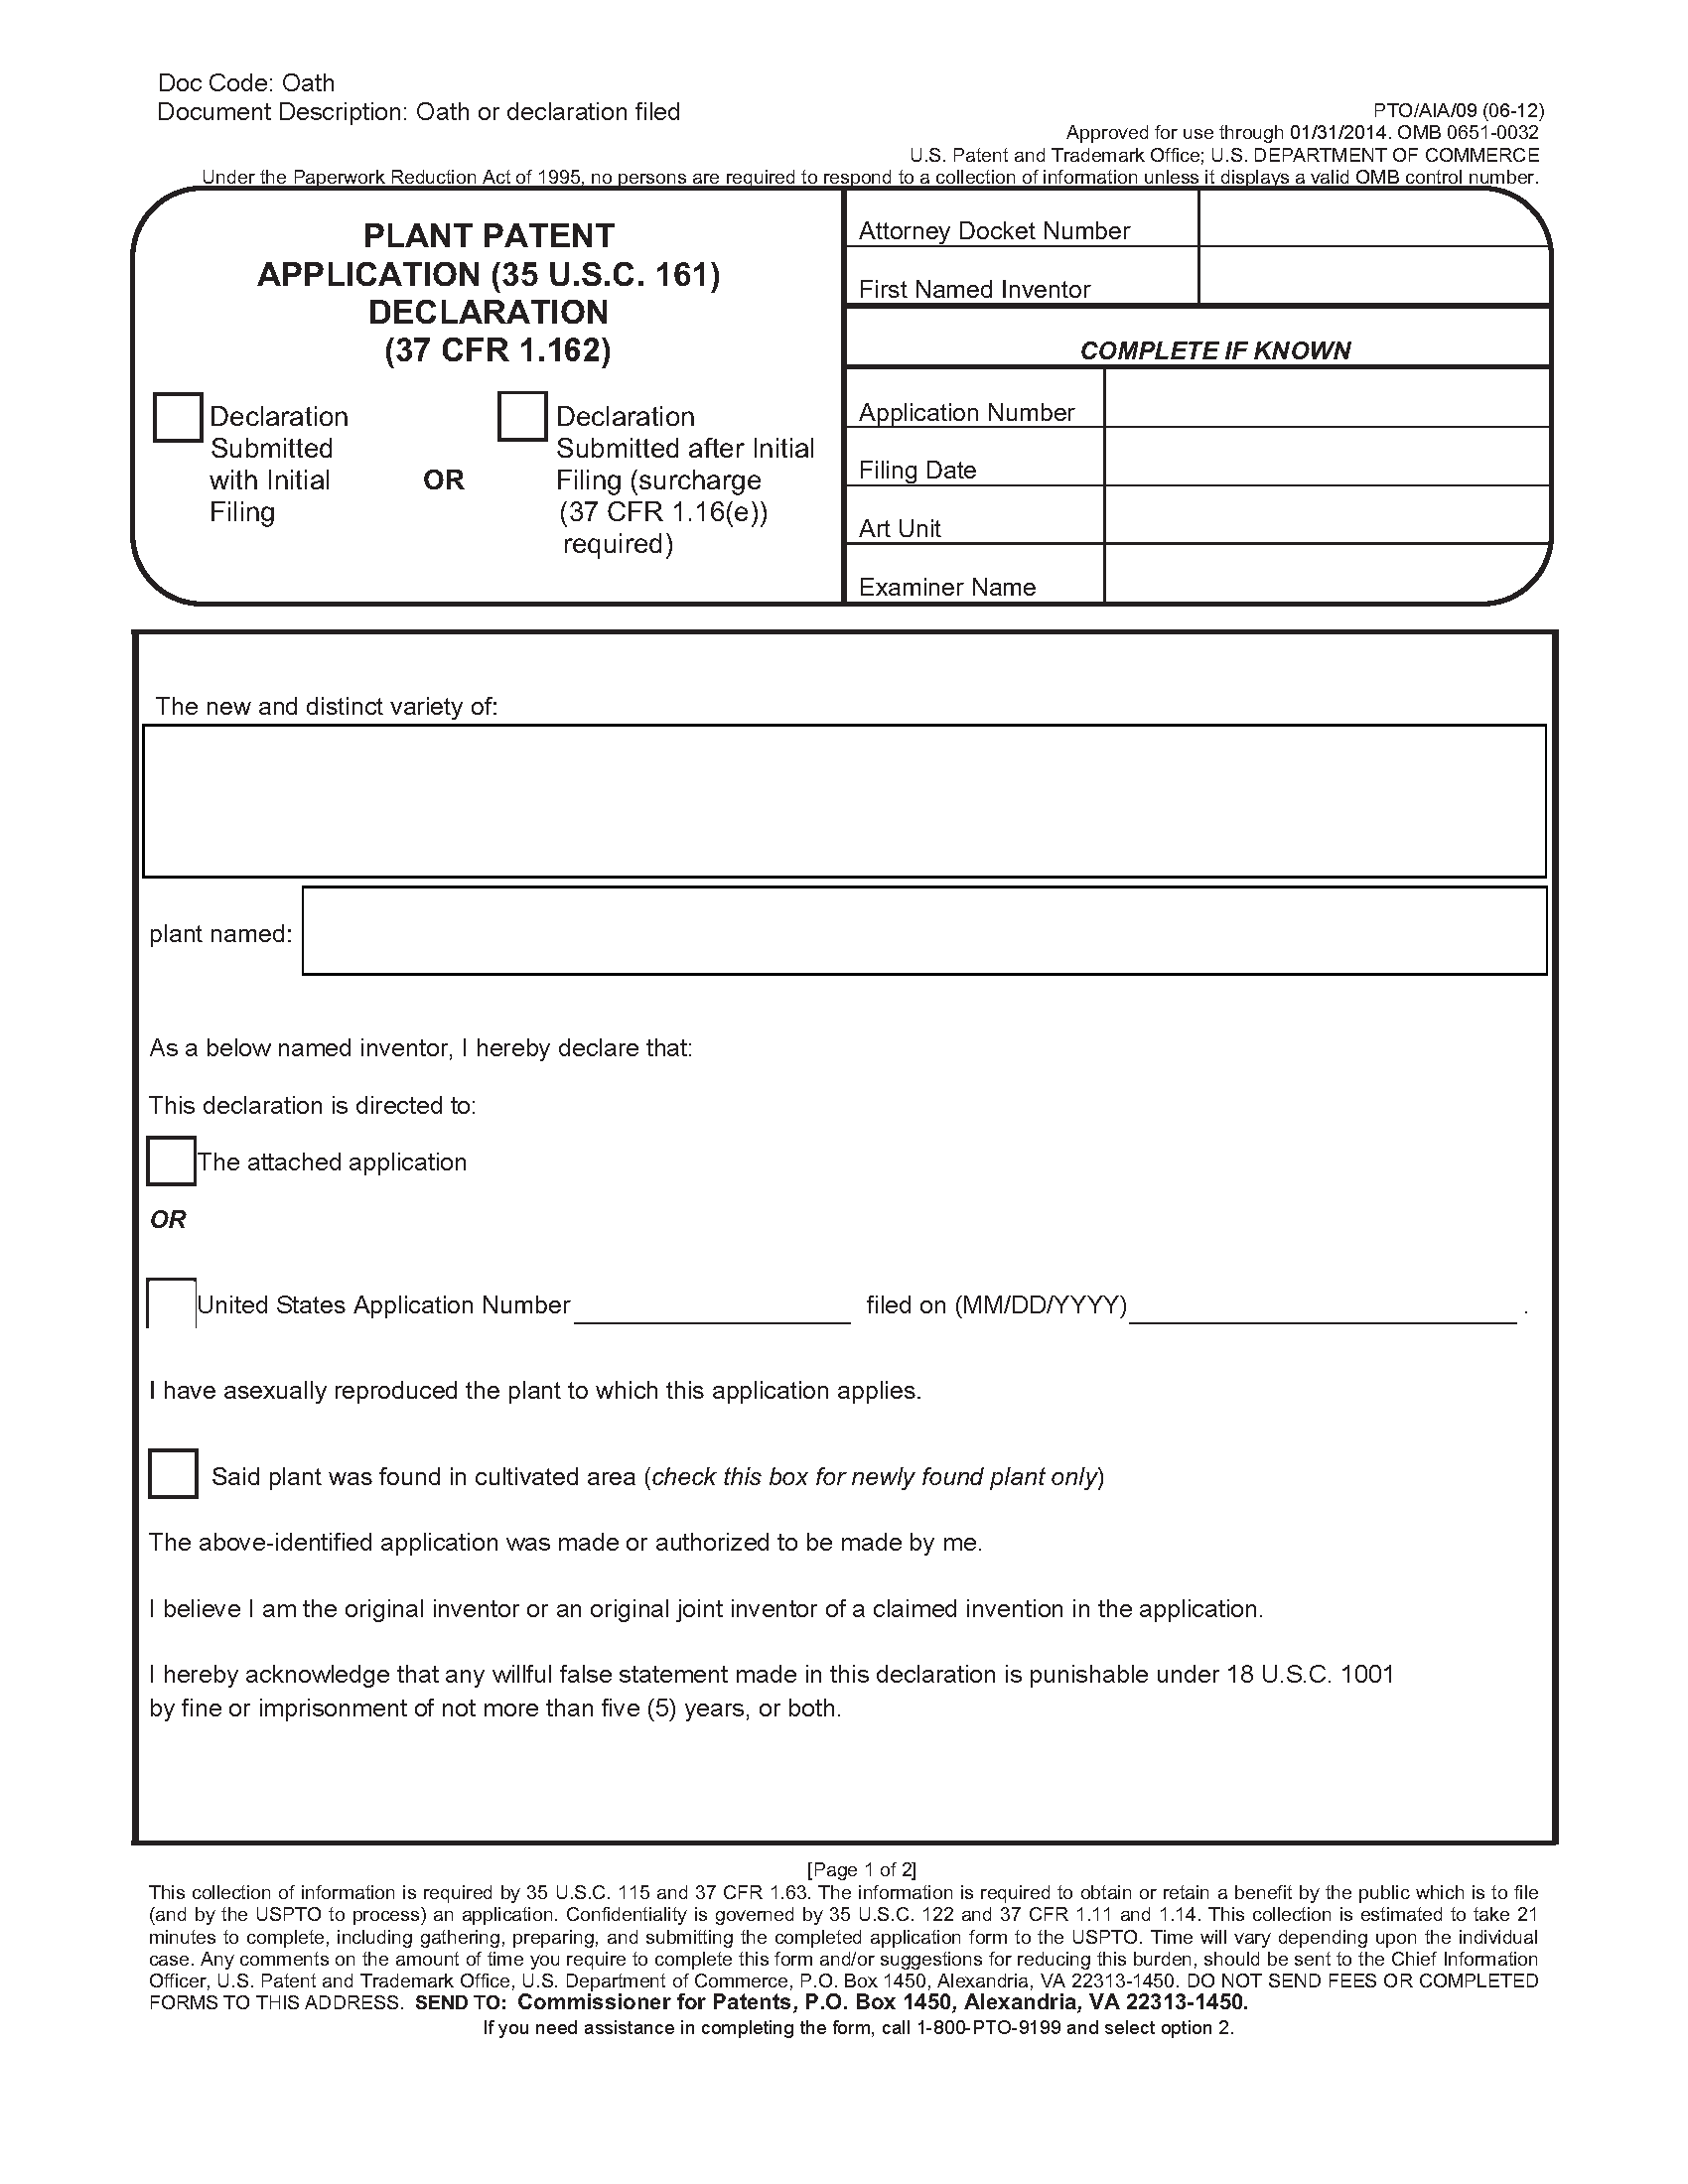 Plant Patent Application (35 U.S.C. 161) Declaration (37 CFR 1.63) (Form PTO/AIA/09)